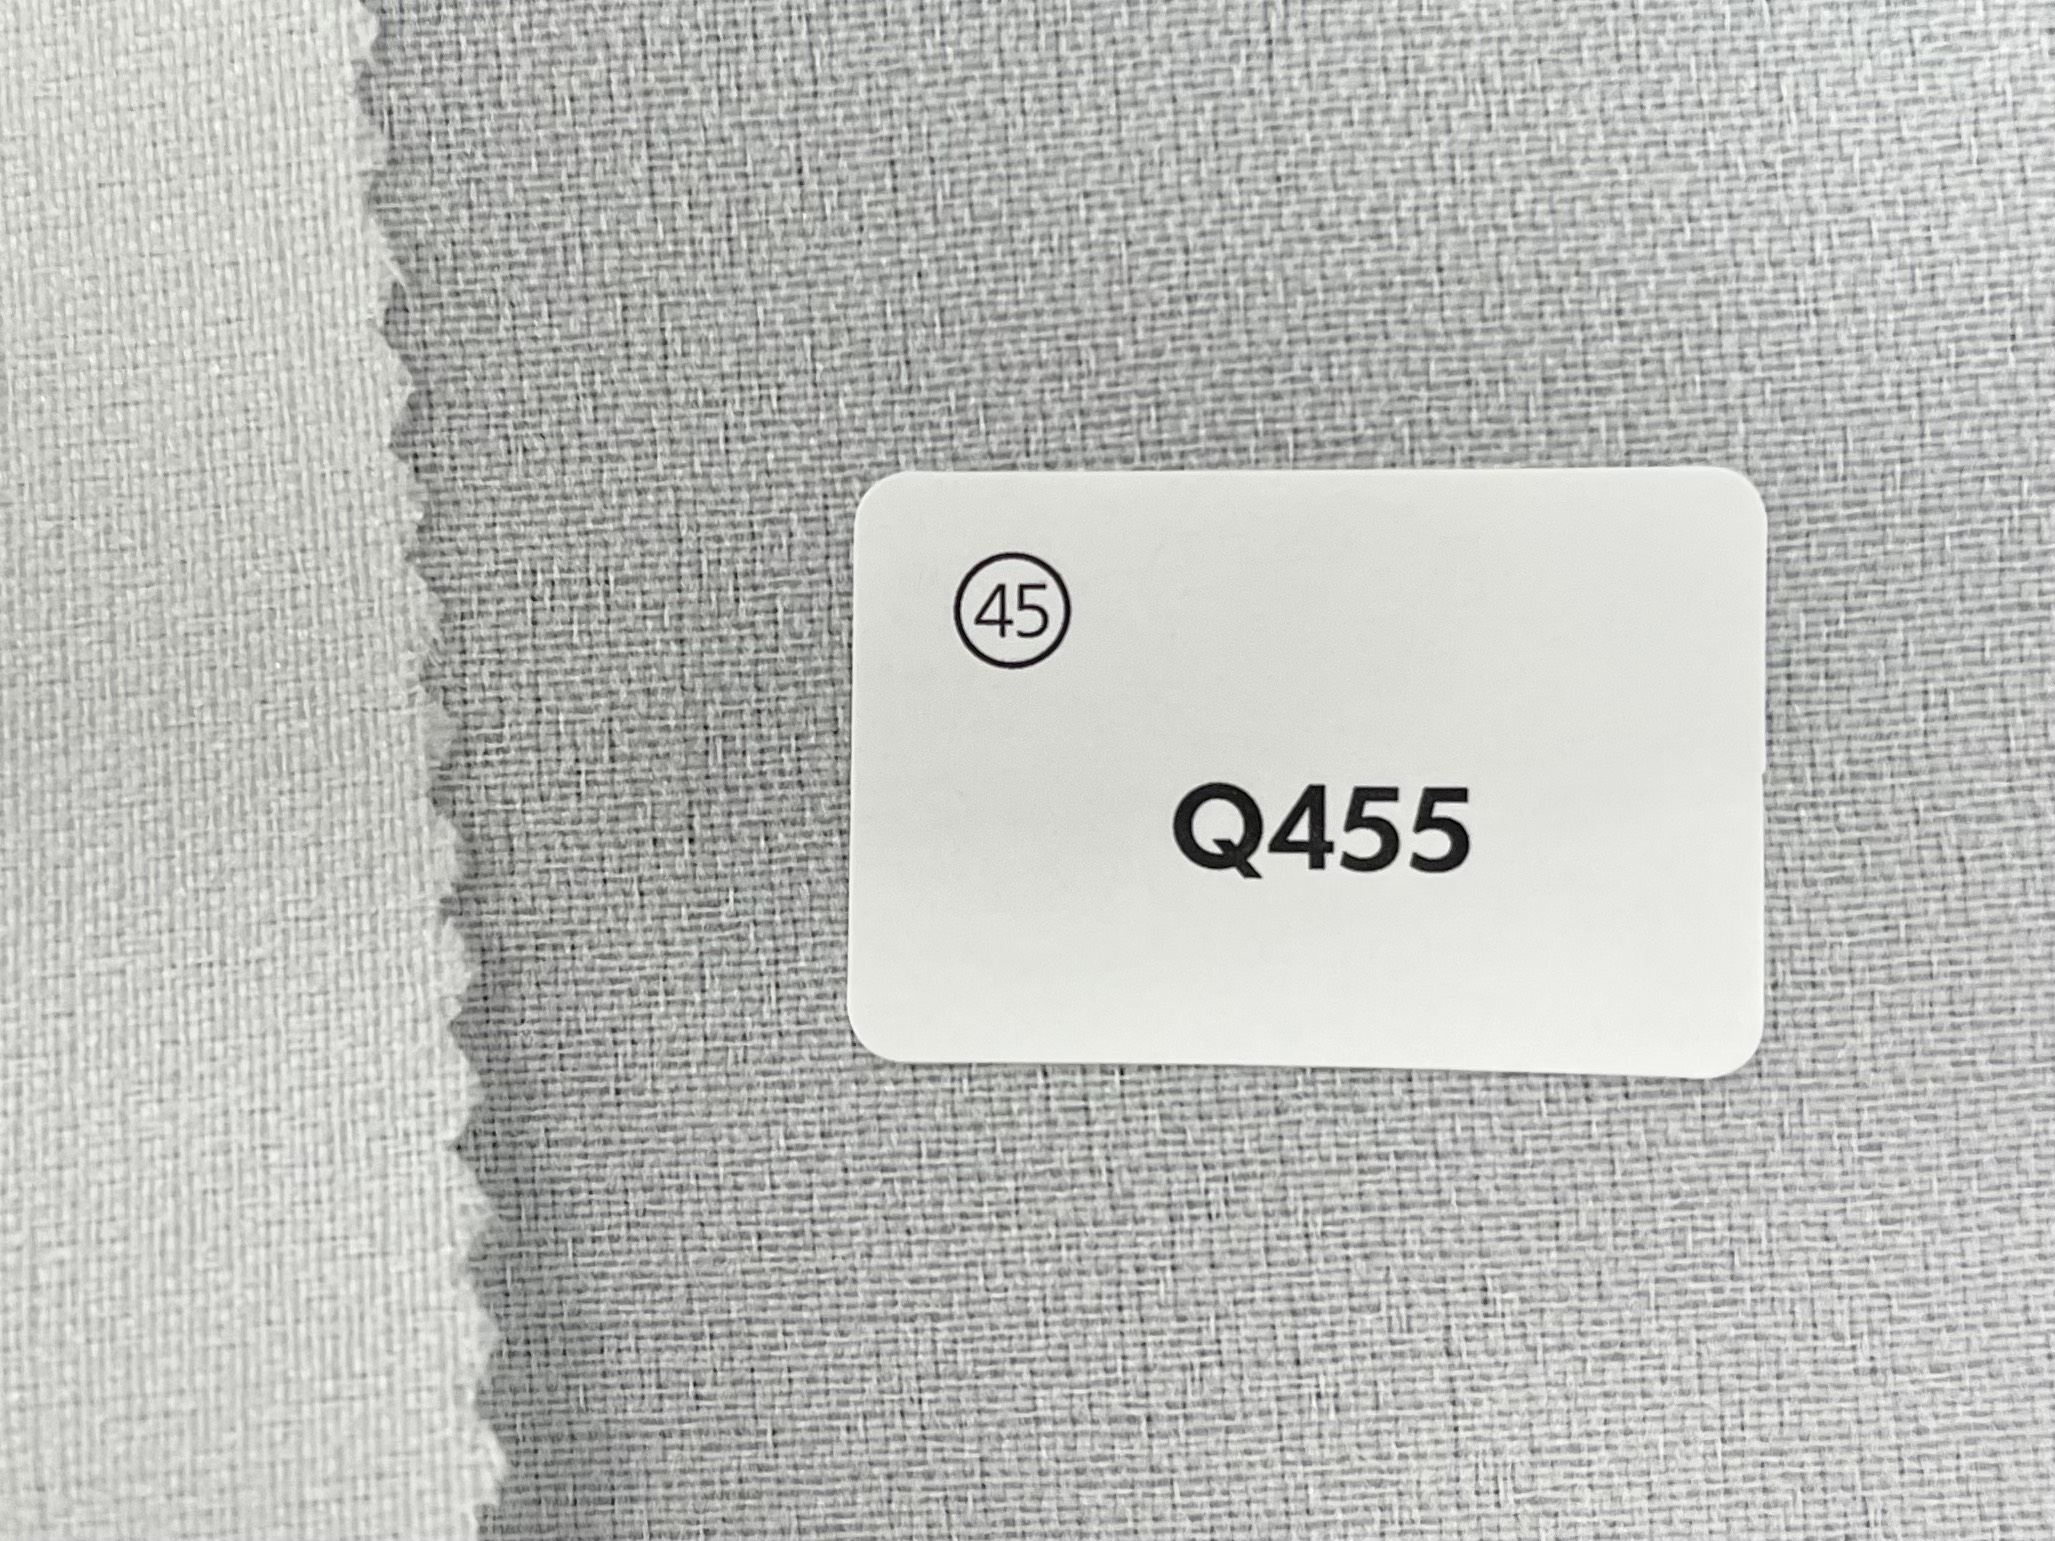 Q455